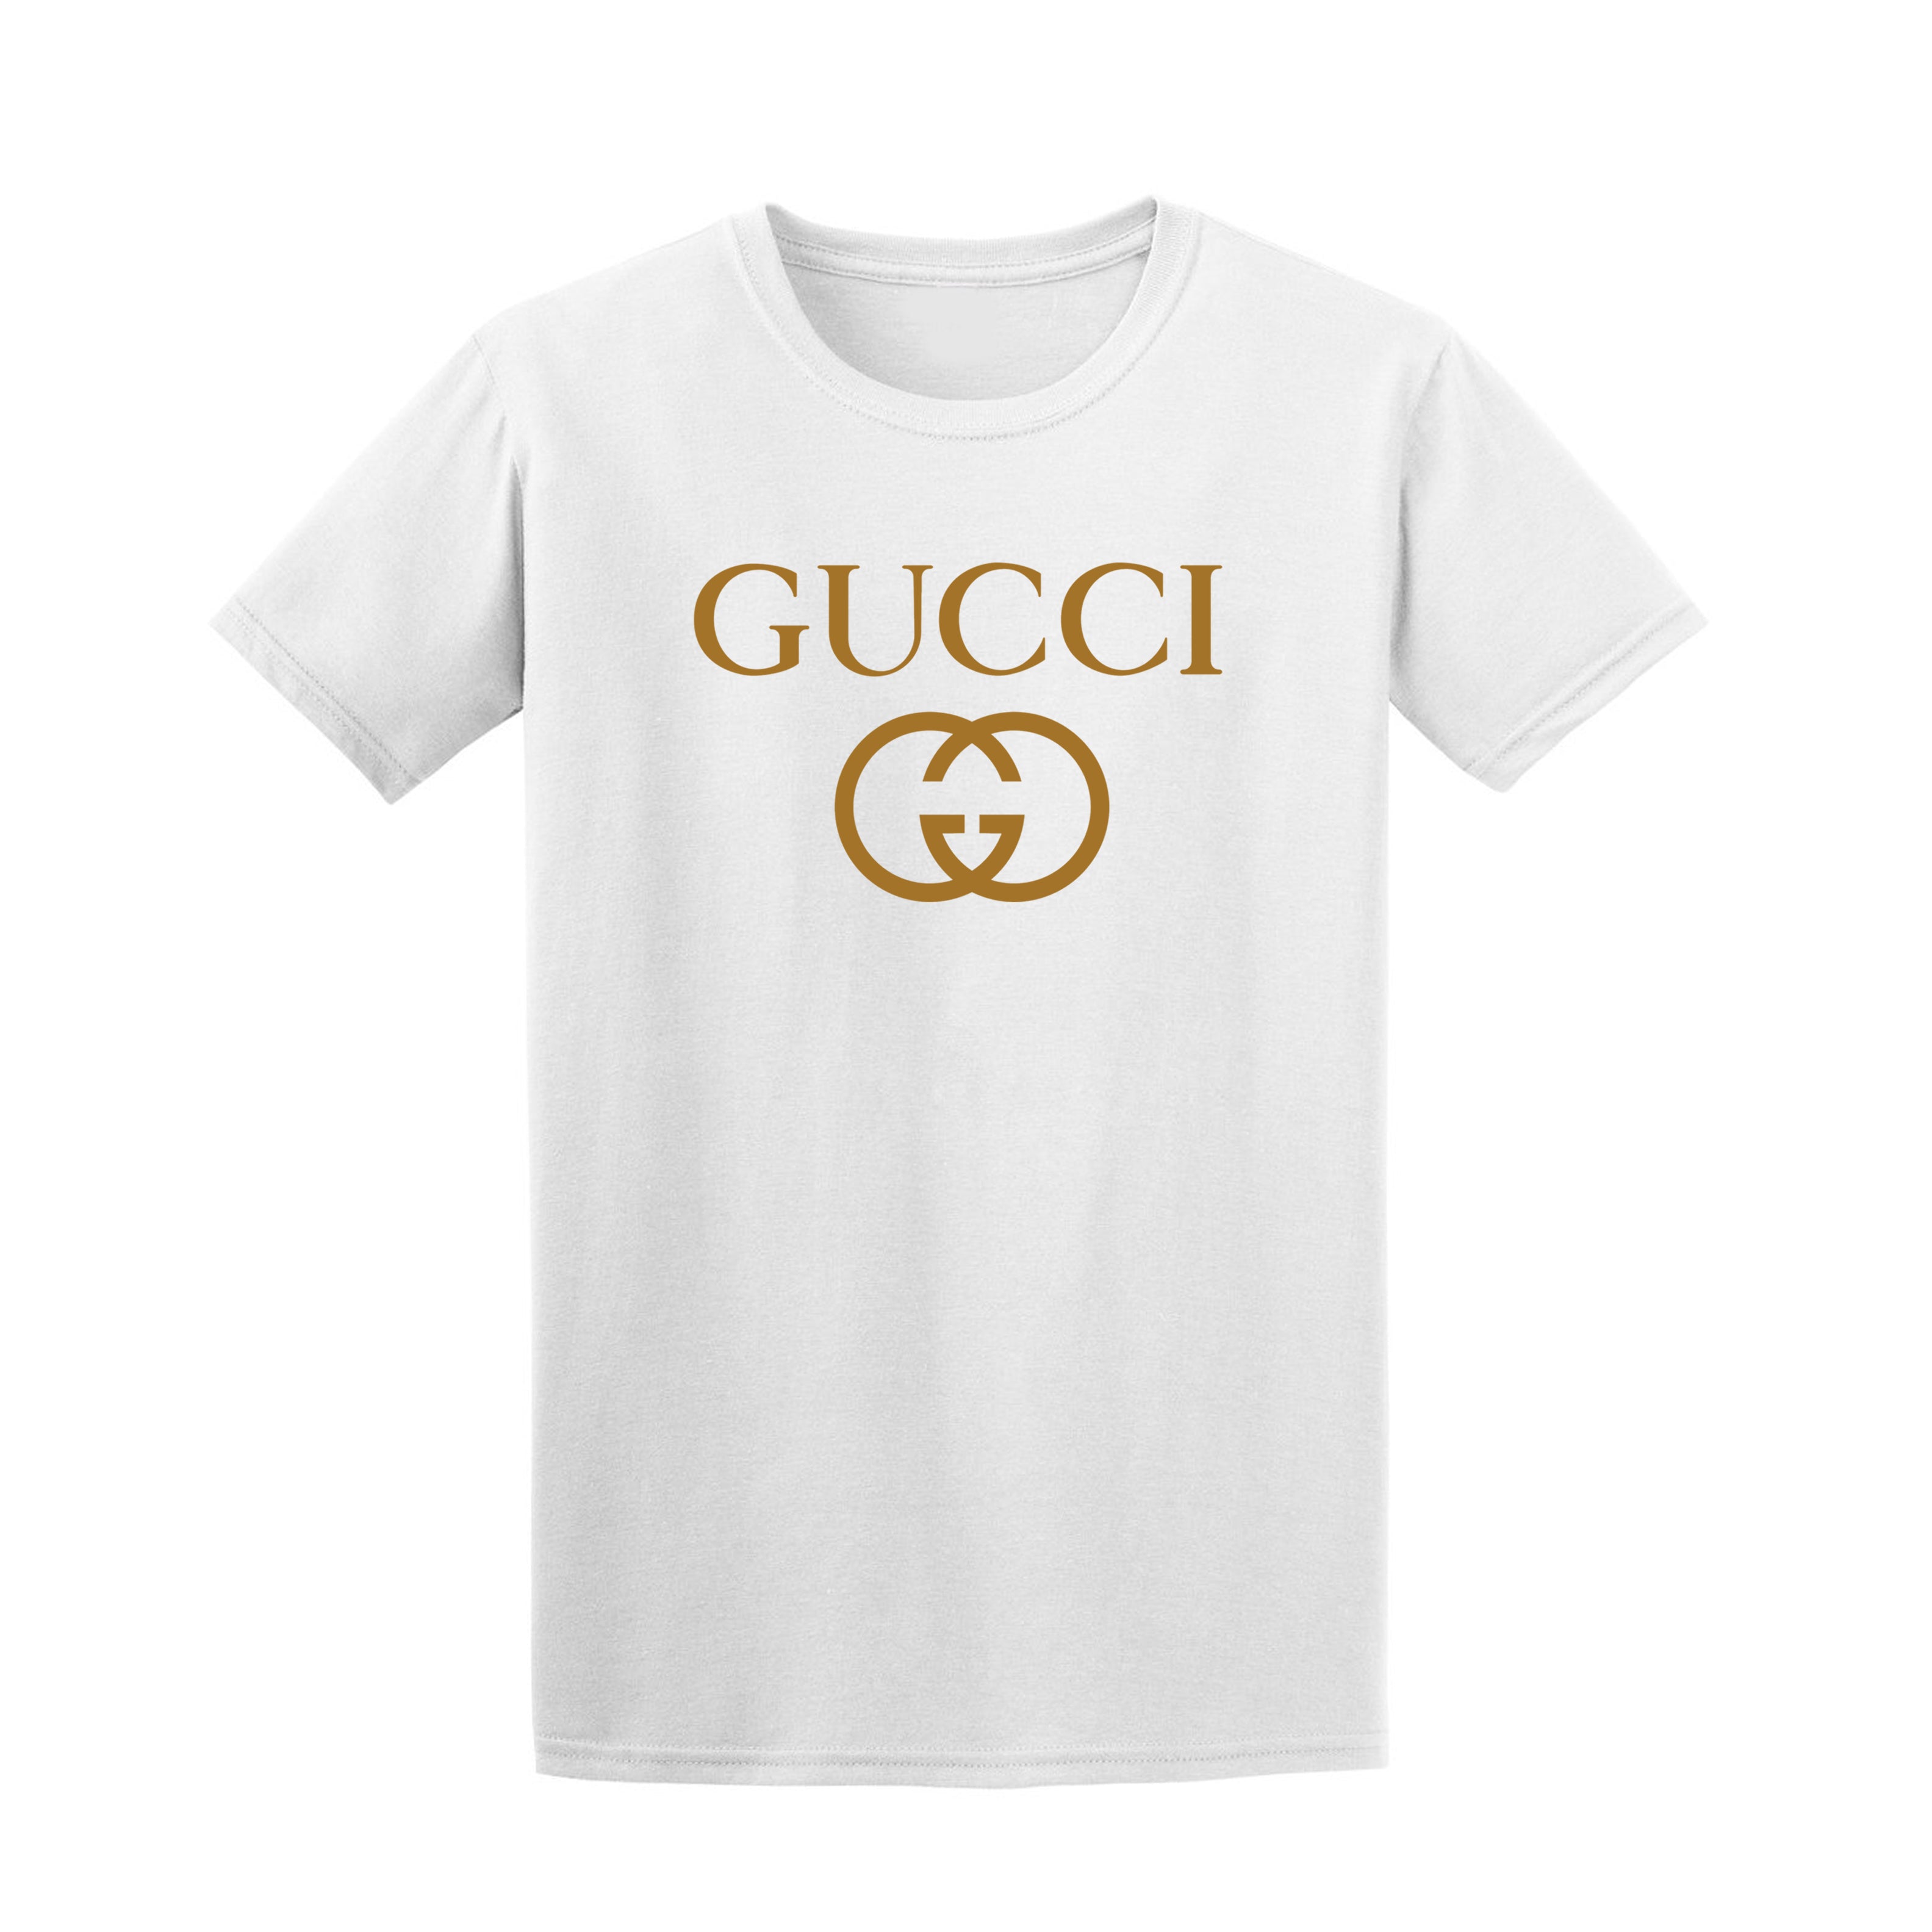 Gucci - Men - Printed Cotton-jersey T-Shirt White - L